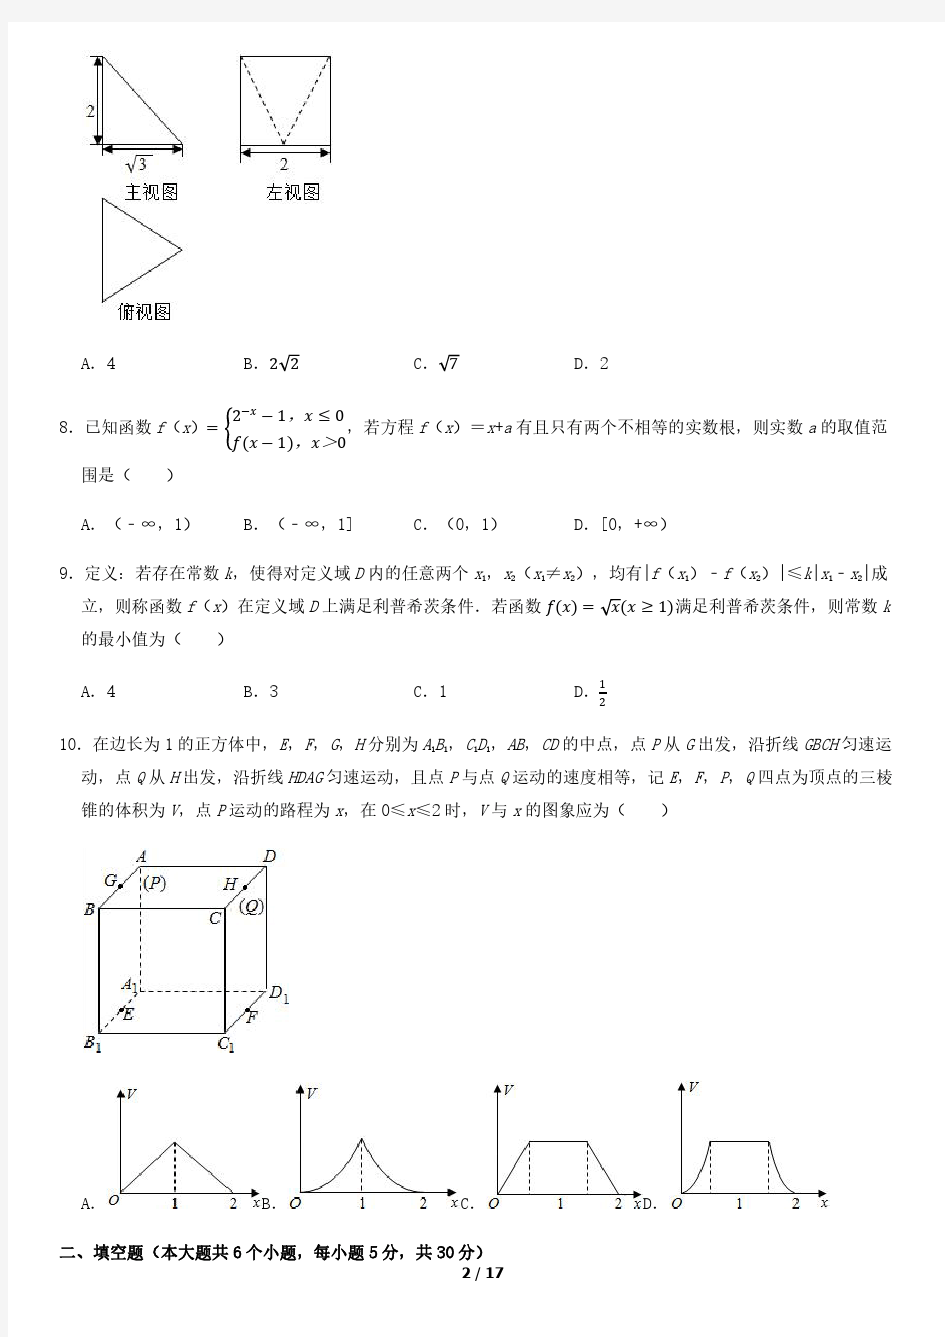 2020北京人大附中高三(下)3月月考数学含答案